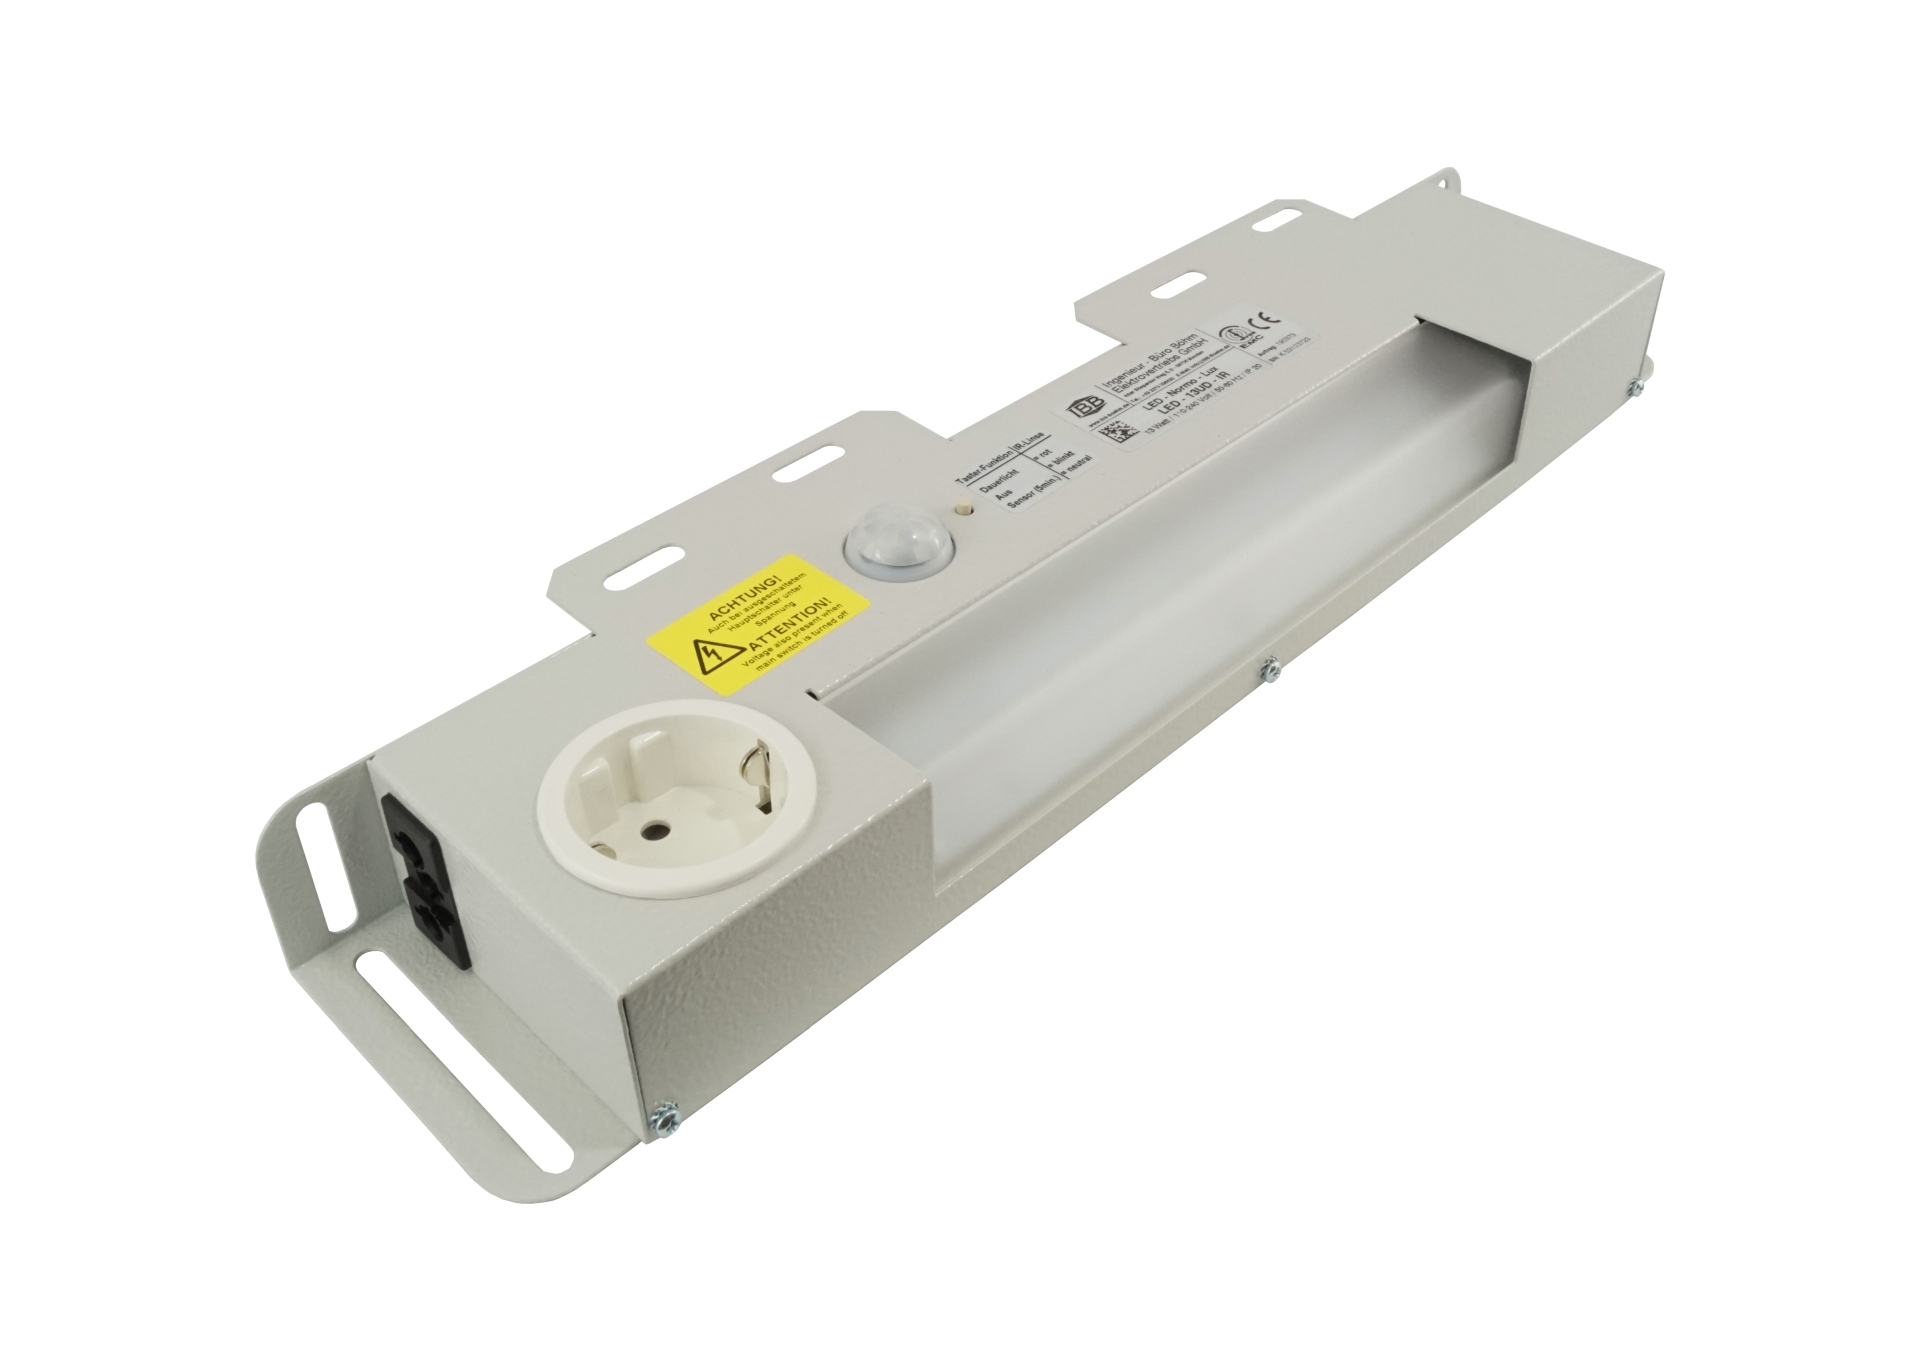 Abbildung LED Schaltschrankleuchte LED-Normo-Lux 13 Watt | Betriebsspannung: 110-240 Volt, 50-60 Hz, Infrarot-Sensor